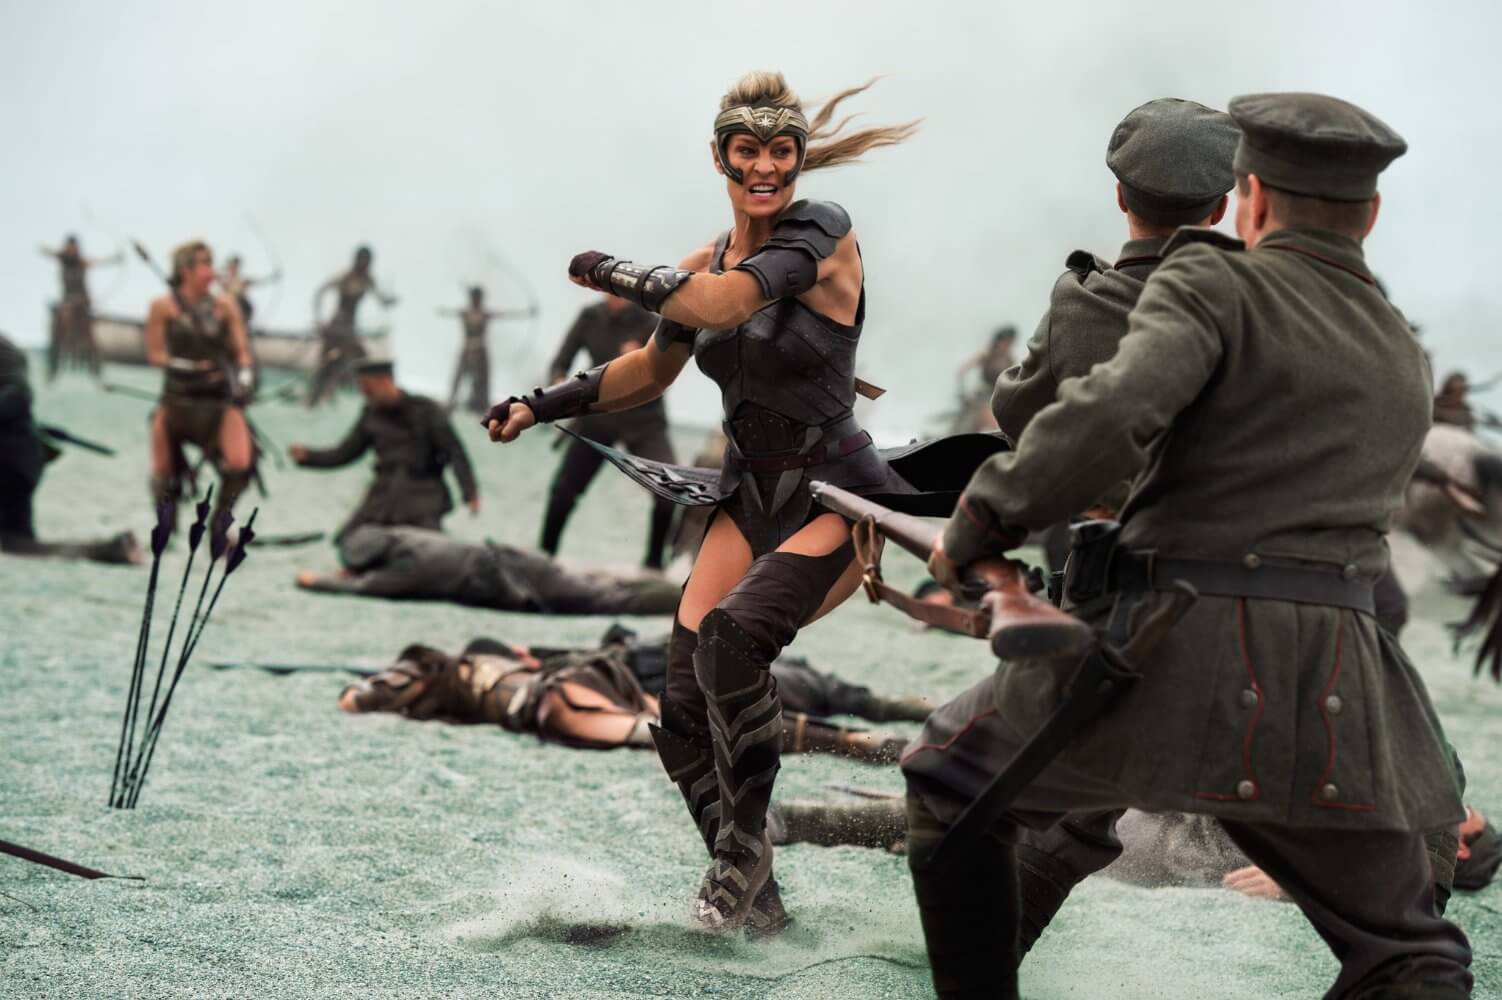 Wonder Woman - Amazona luchando en la playa con pelotón de soldados